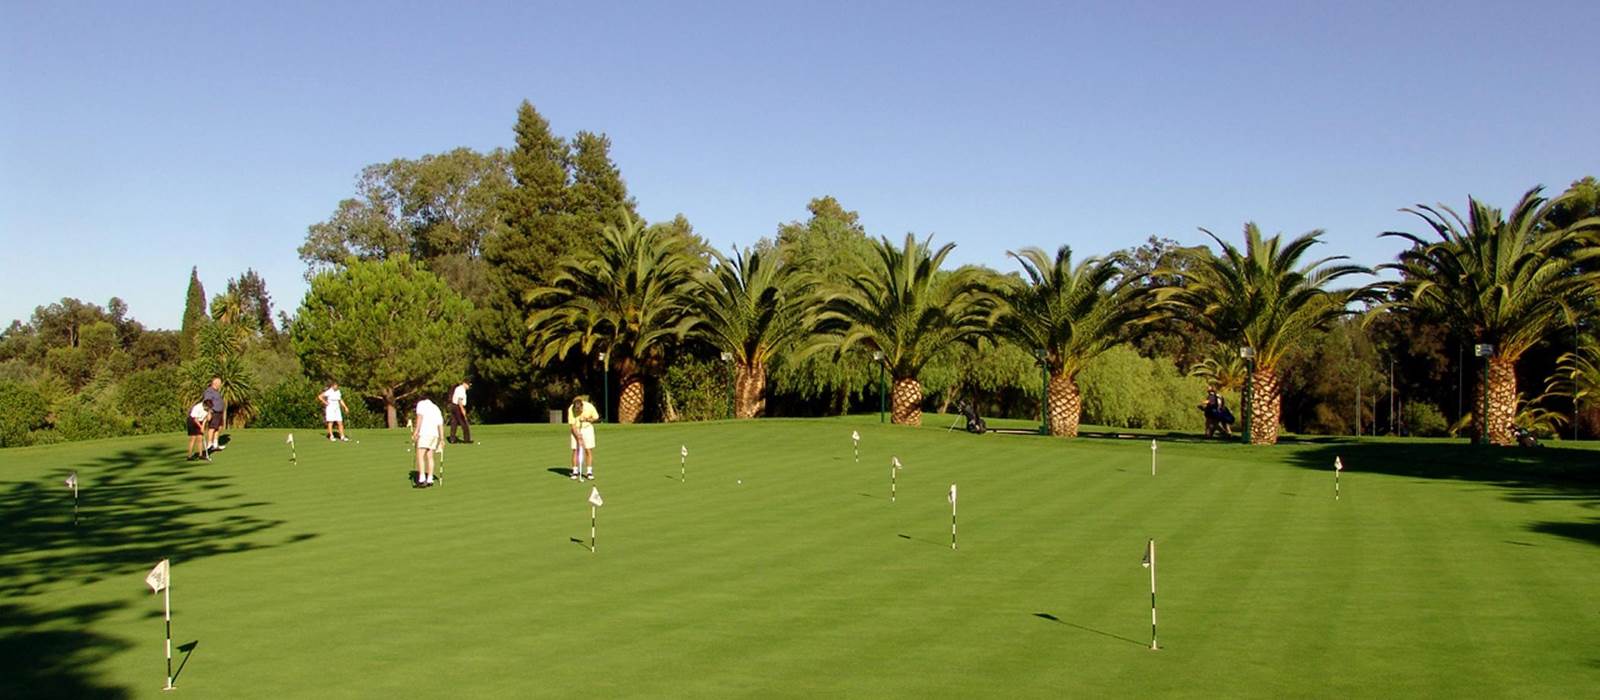 Putting Green at Penina Hotel and Golf Resort